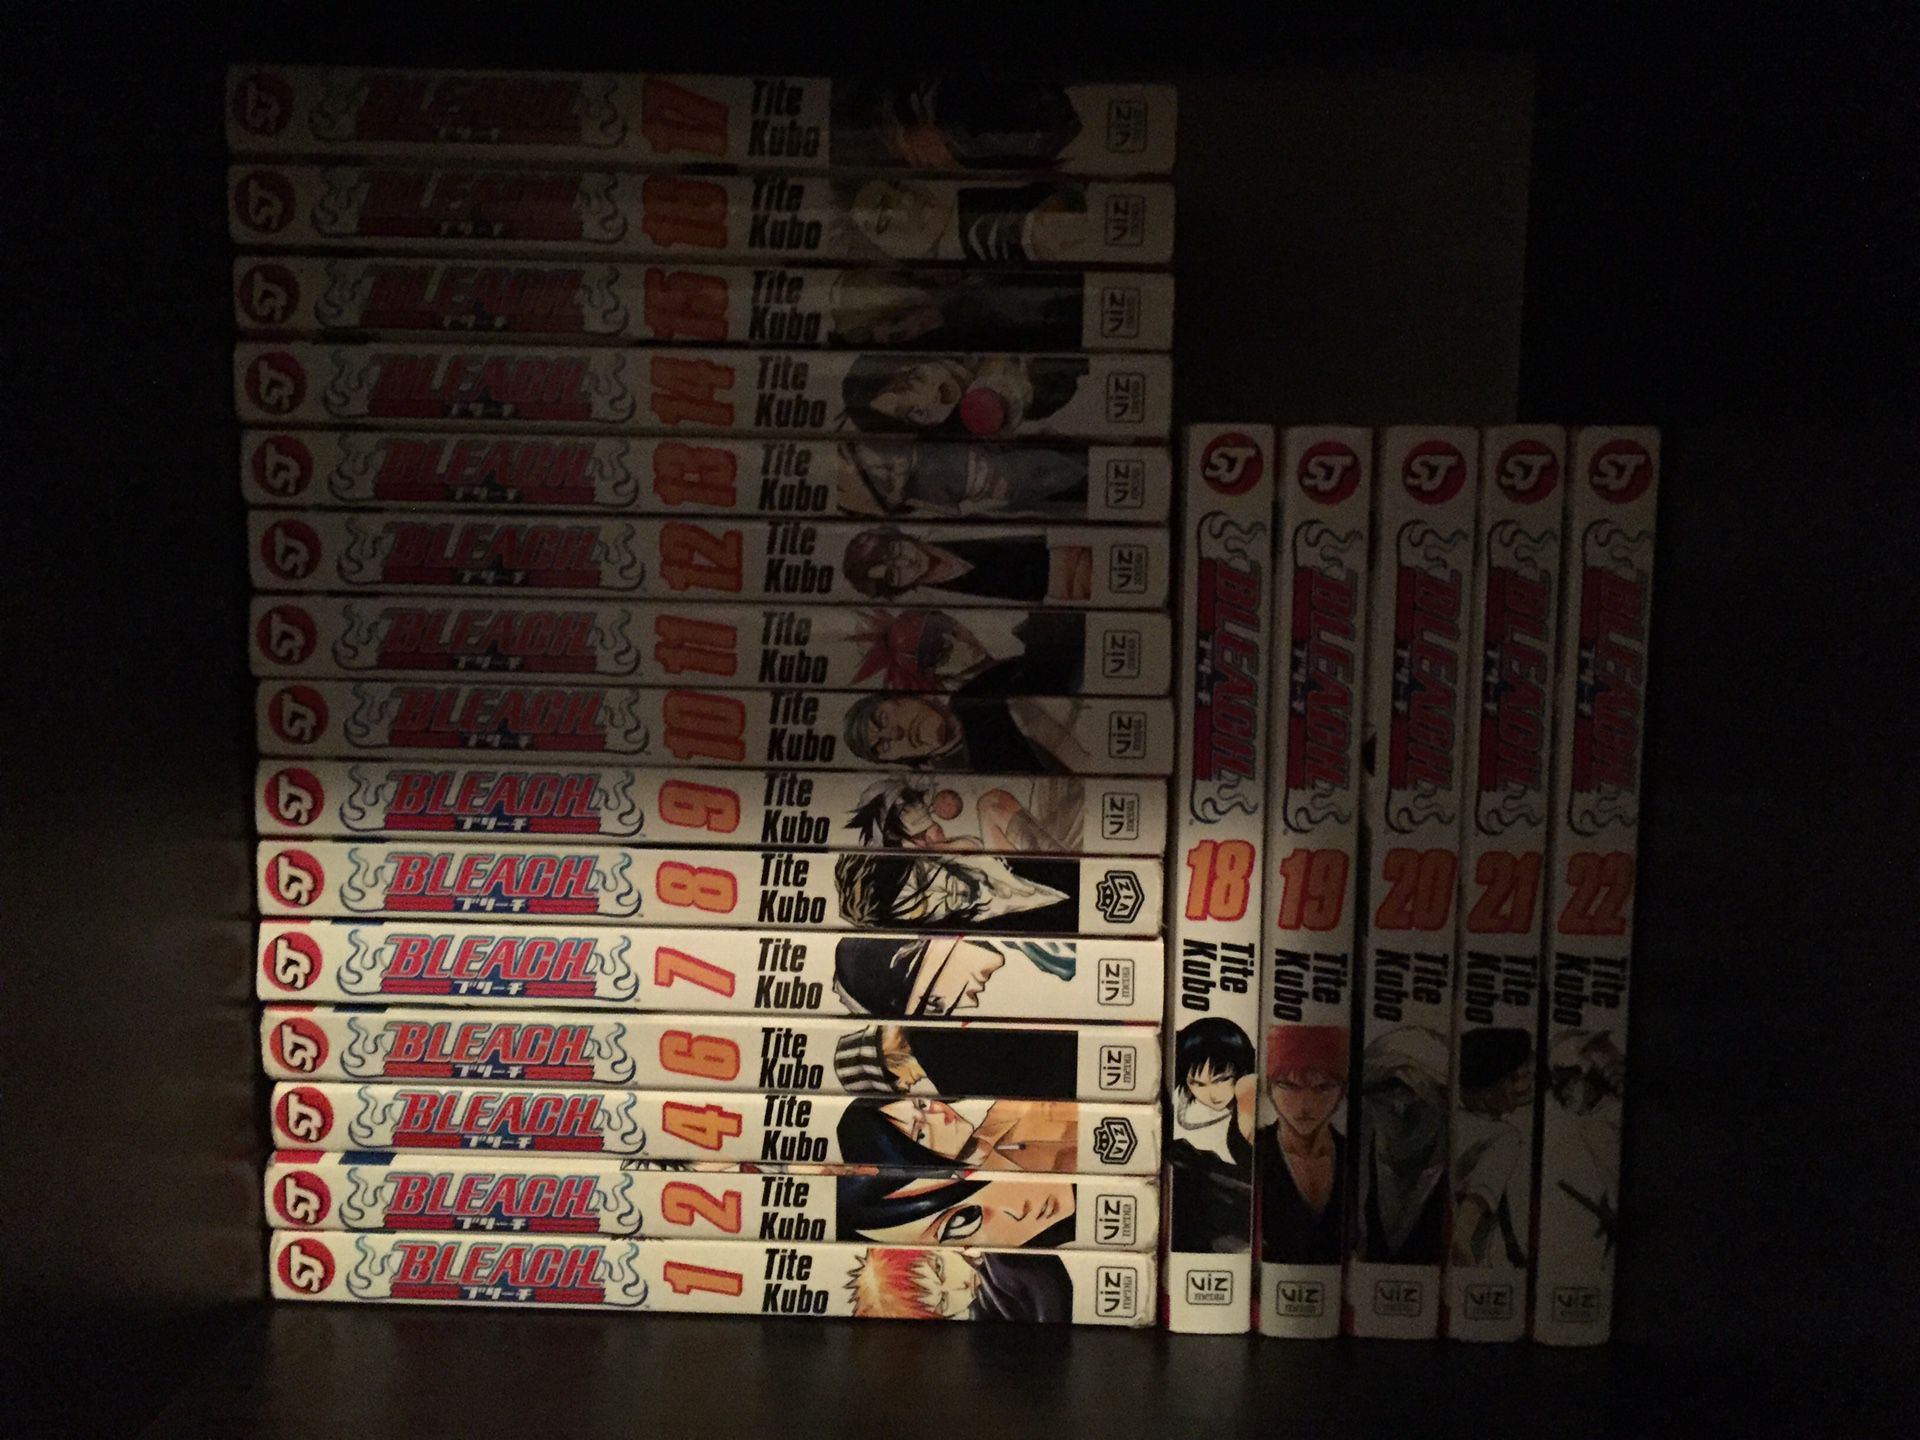 Bleach Vol. 1-22 Manga (Except No 3,5)